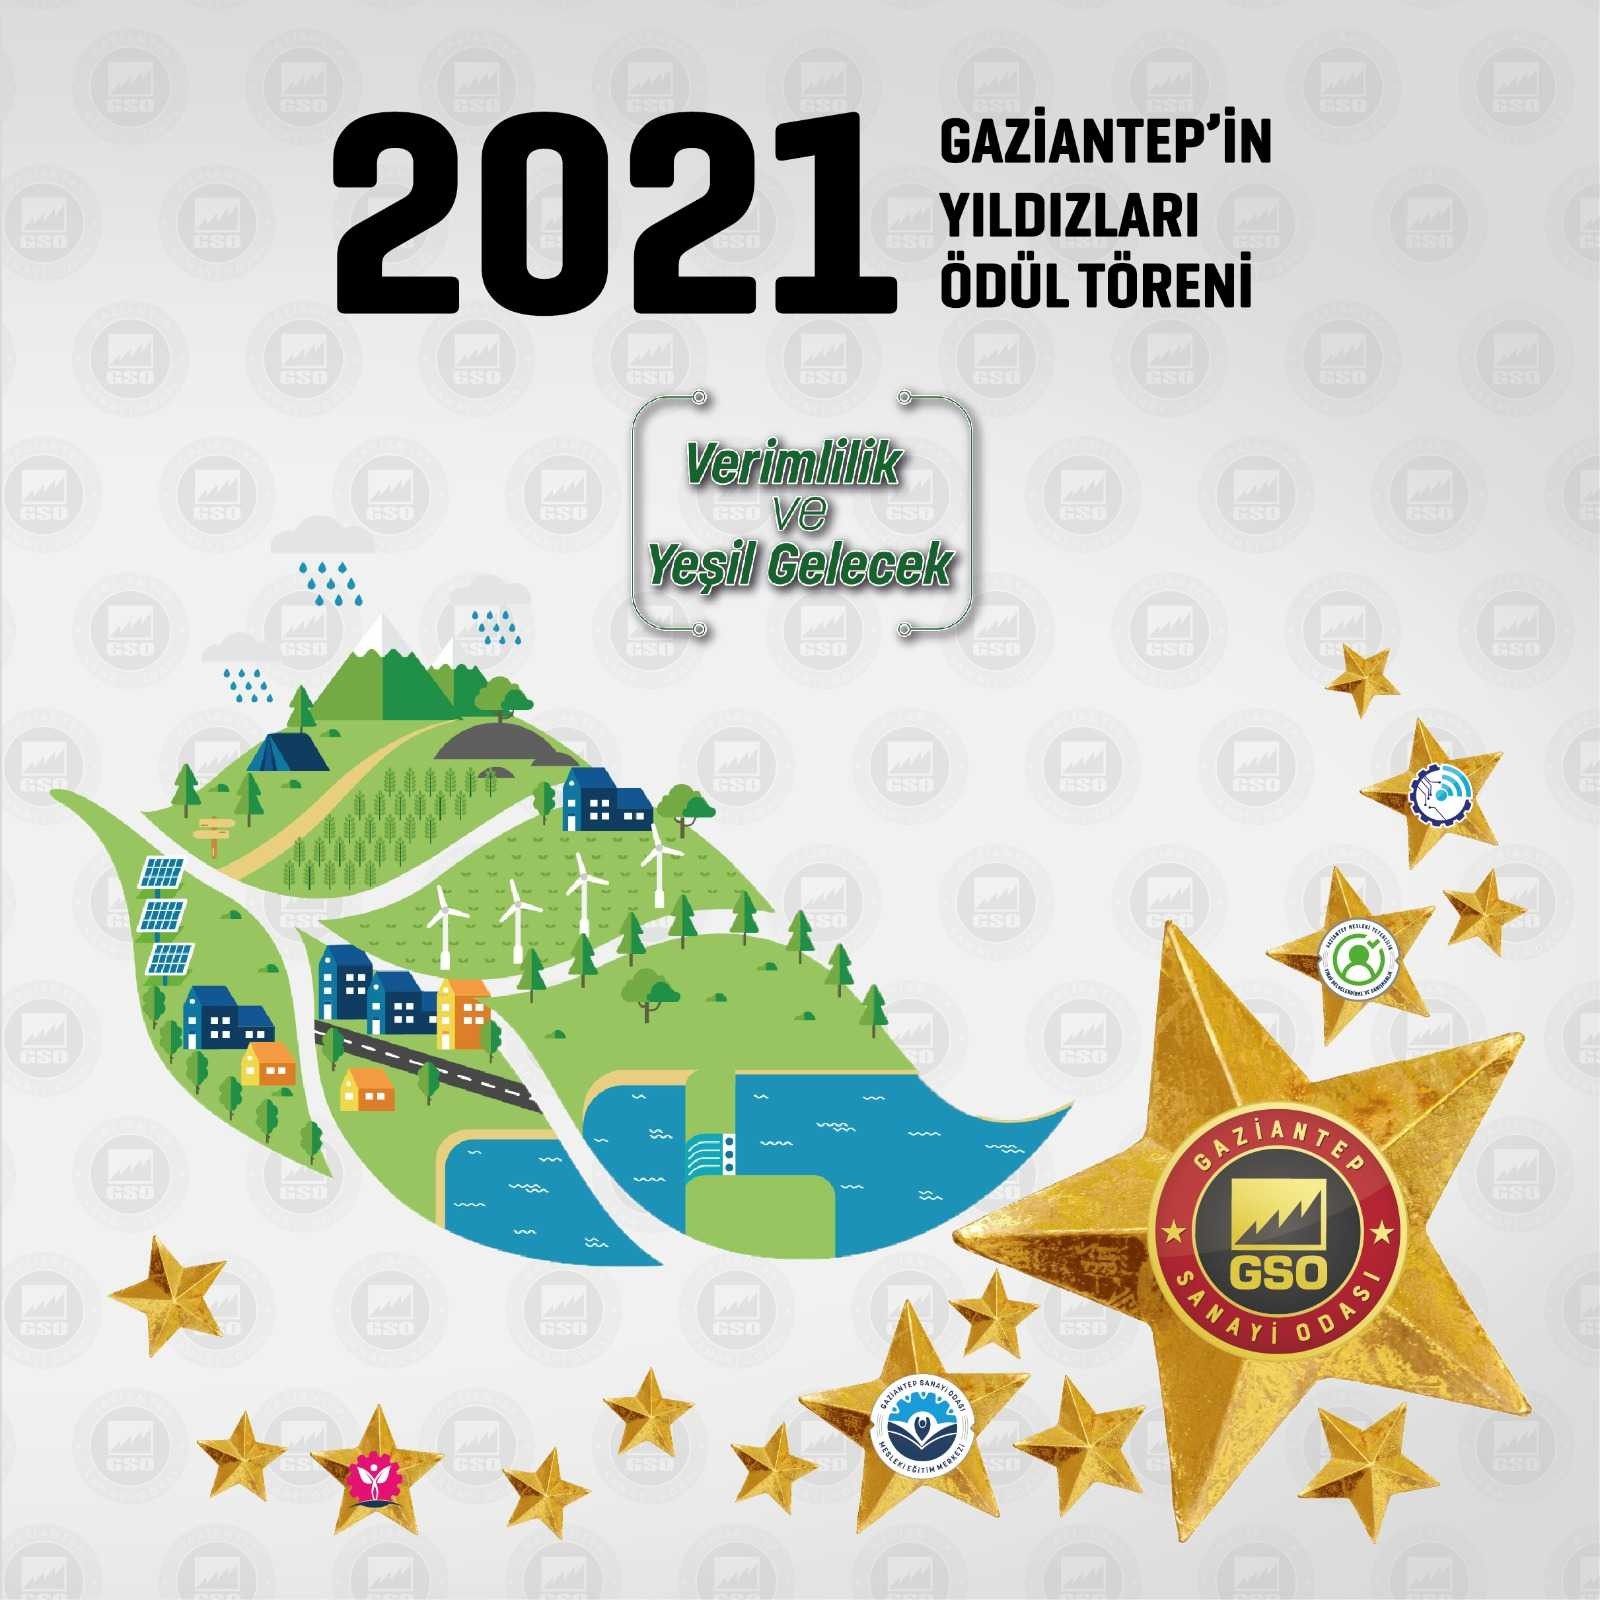 Gaziantep’in Yıldızları ödüllerini 6 Ekim’de alacak #gaziantep